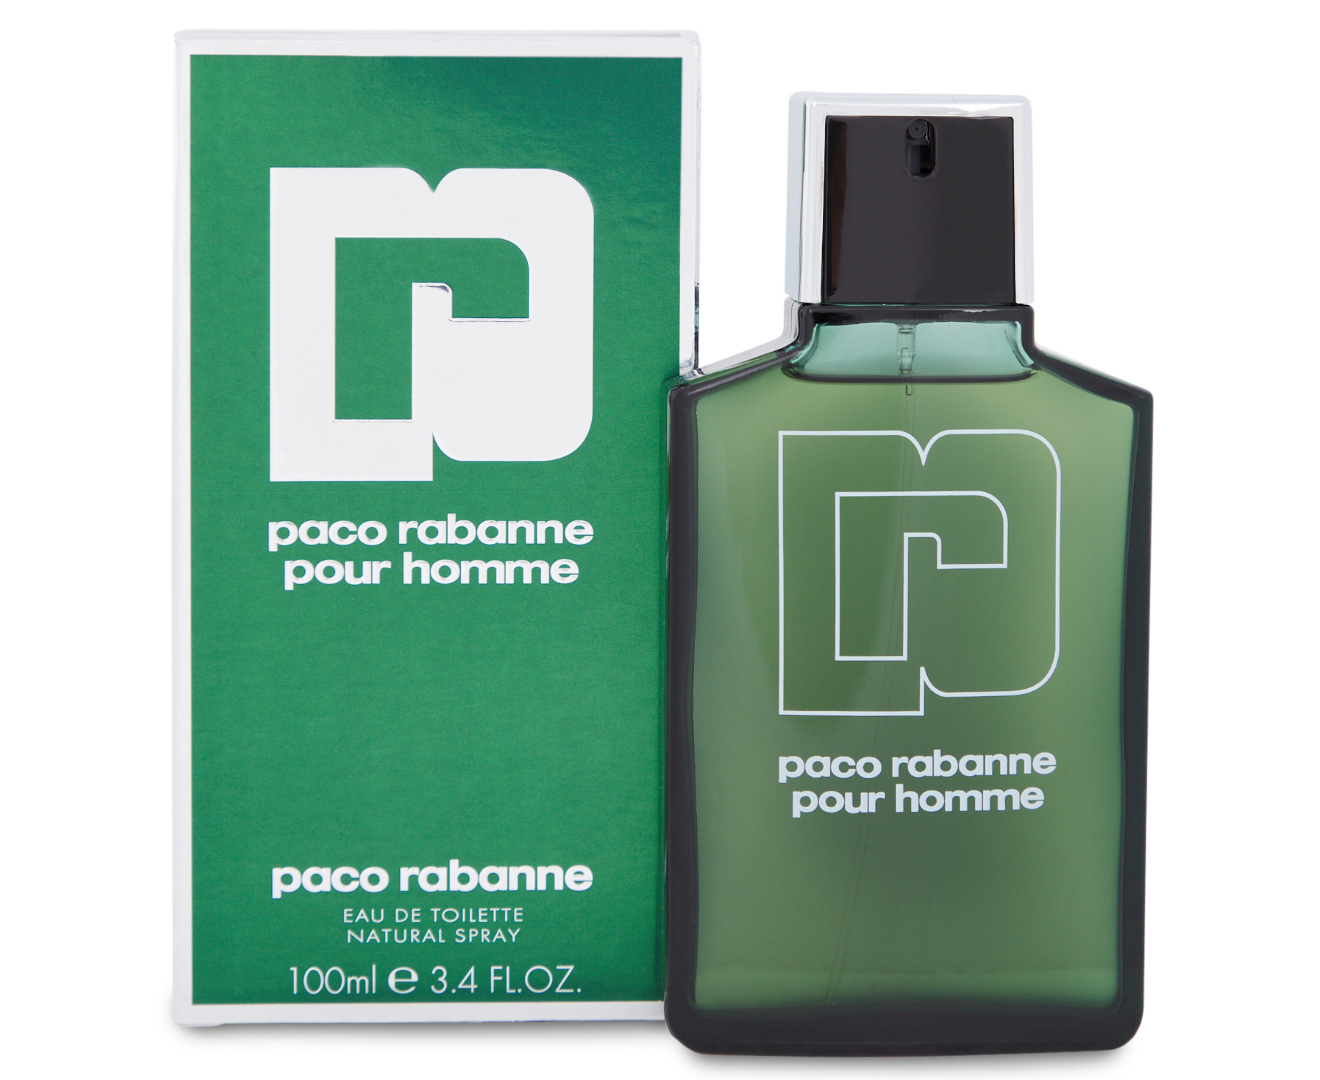 Paco Rabanne Pour Homme For Men EDT Perfume 100mL | Catch.com.au